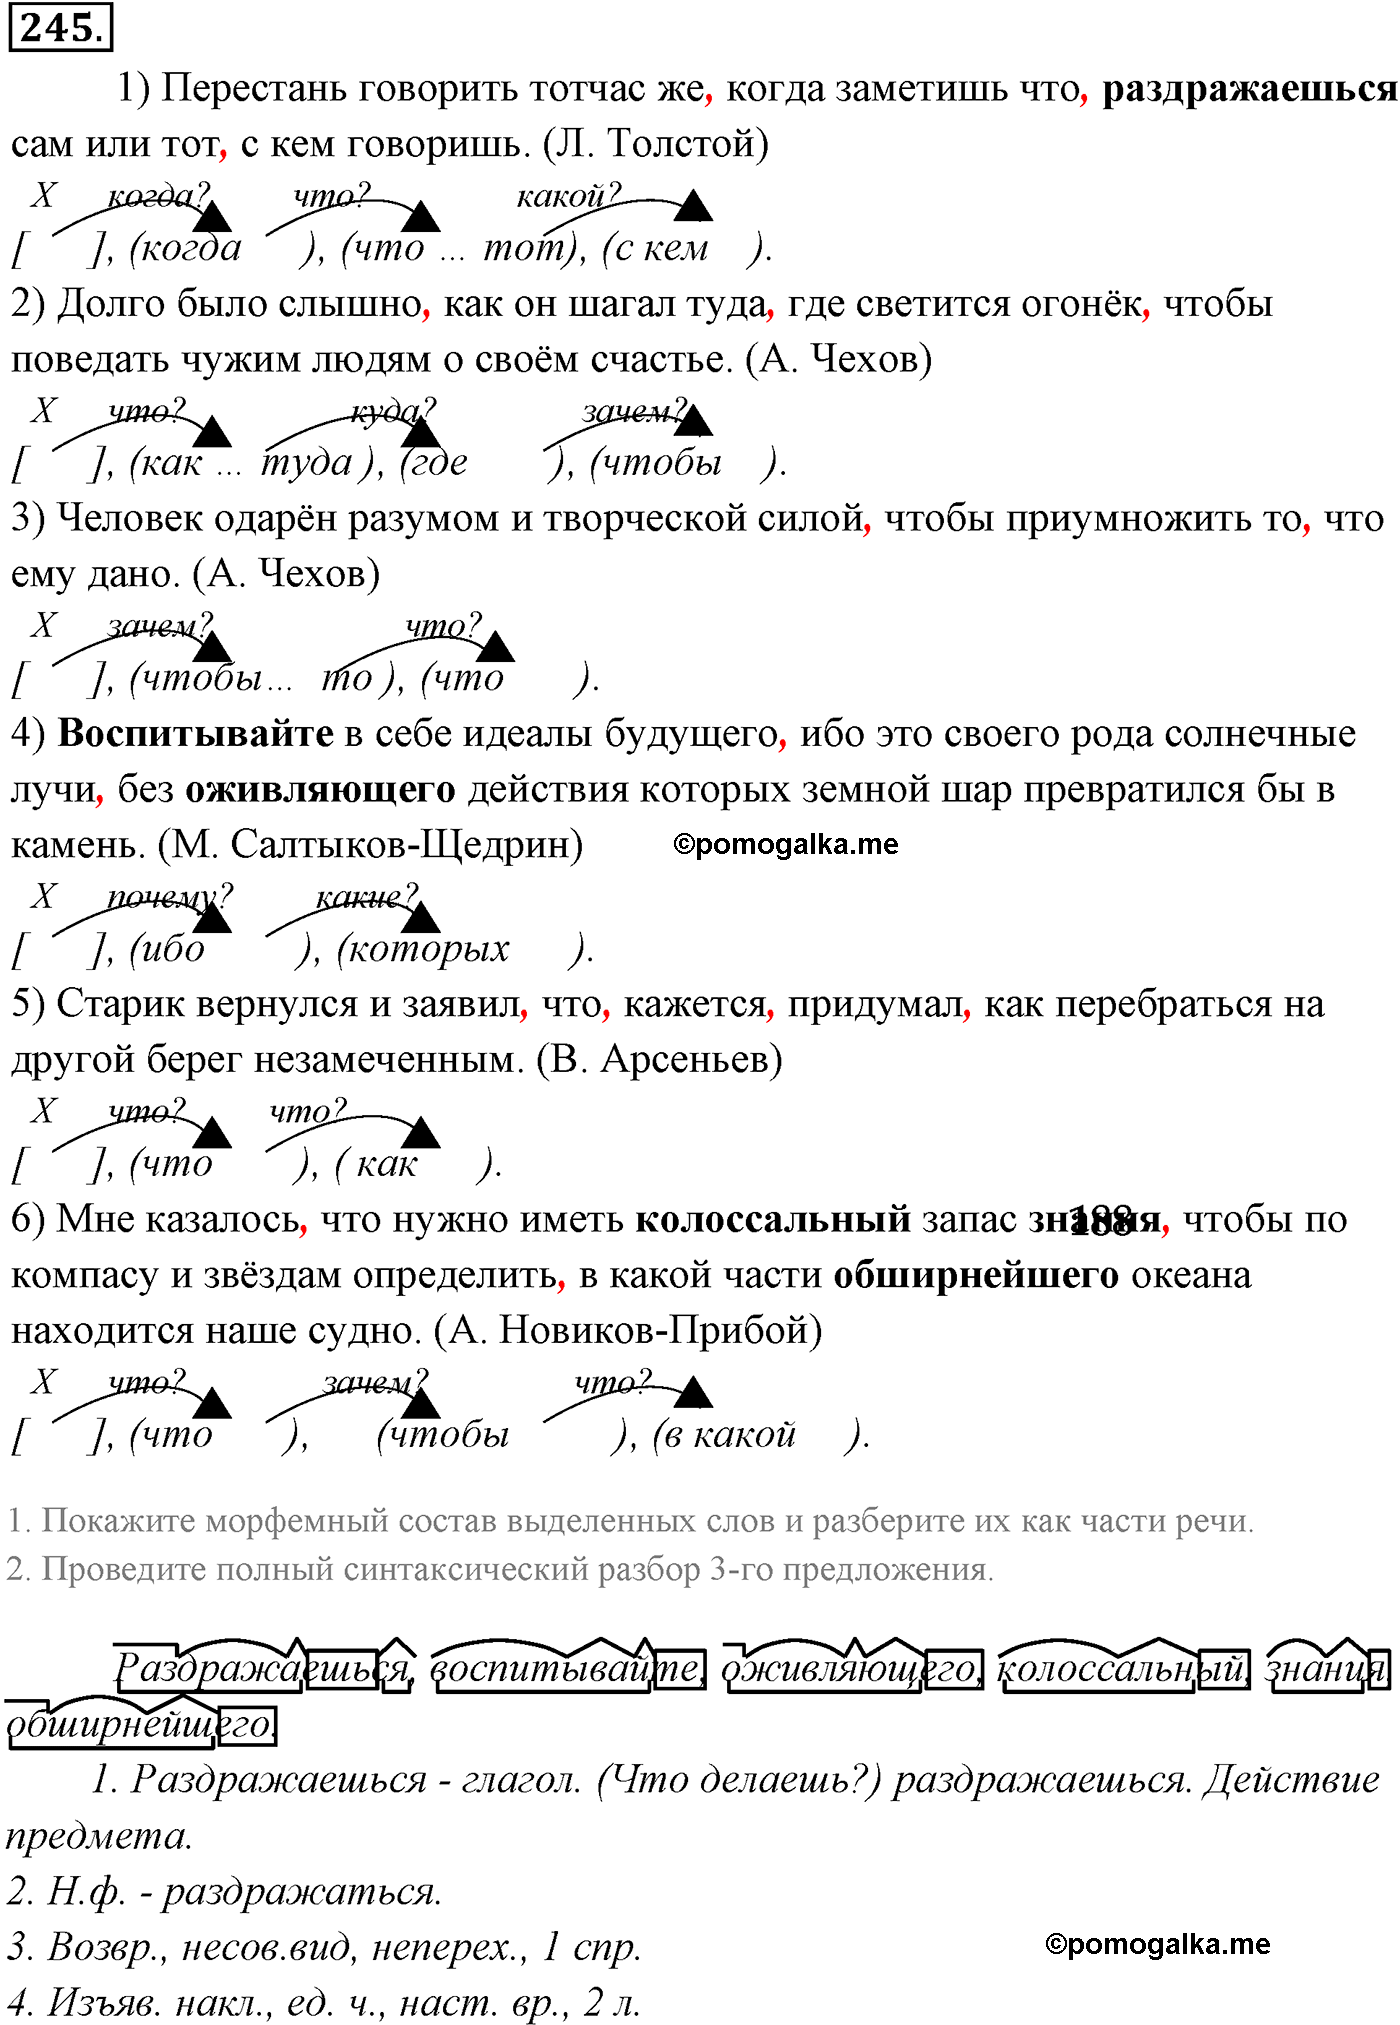 упражнение №245 русский язык 9 класс Разумовская